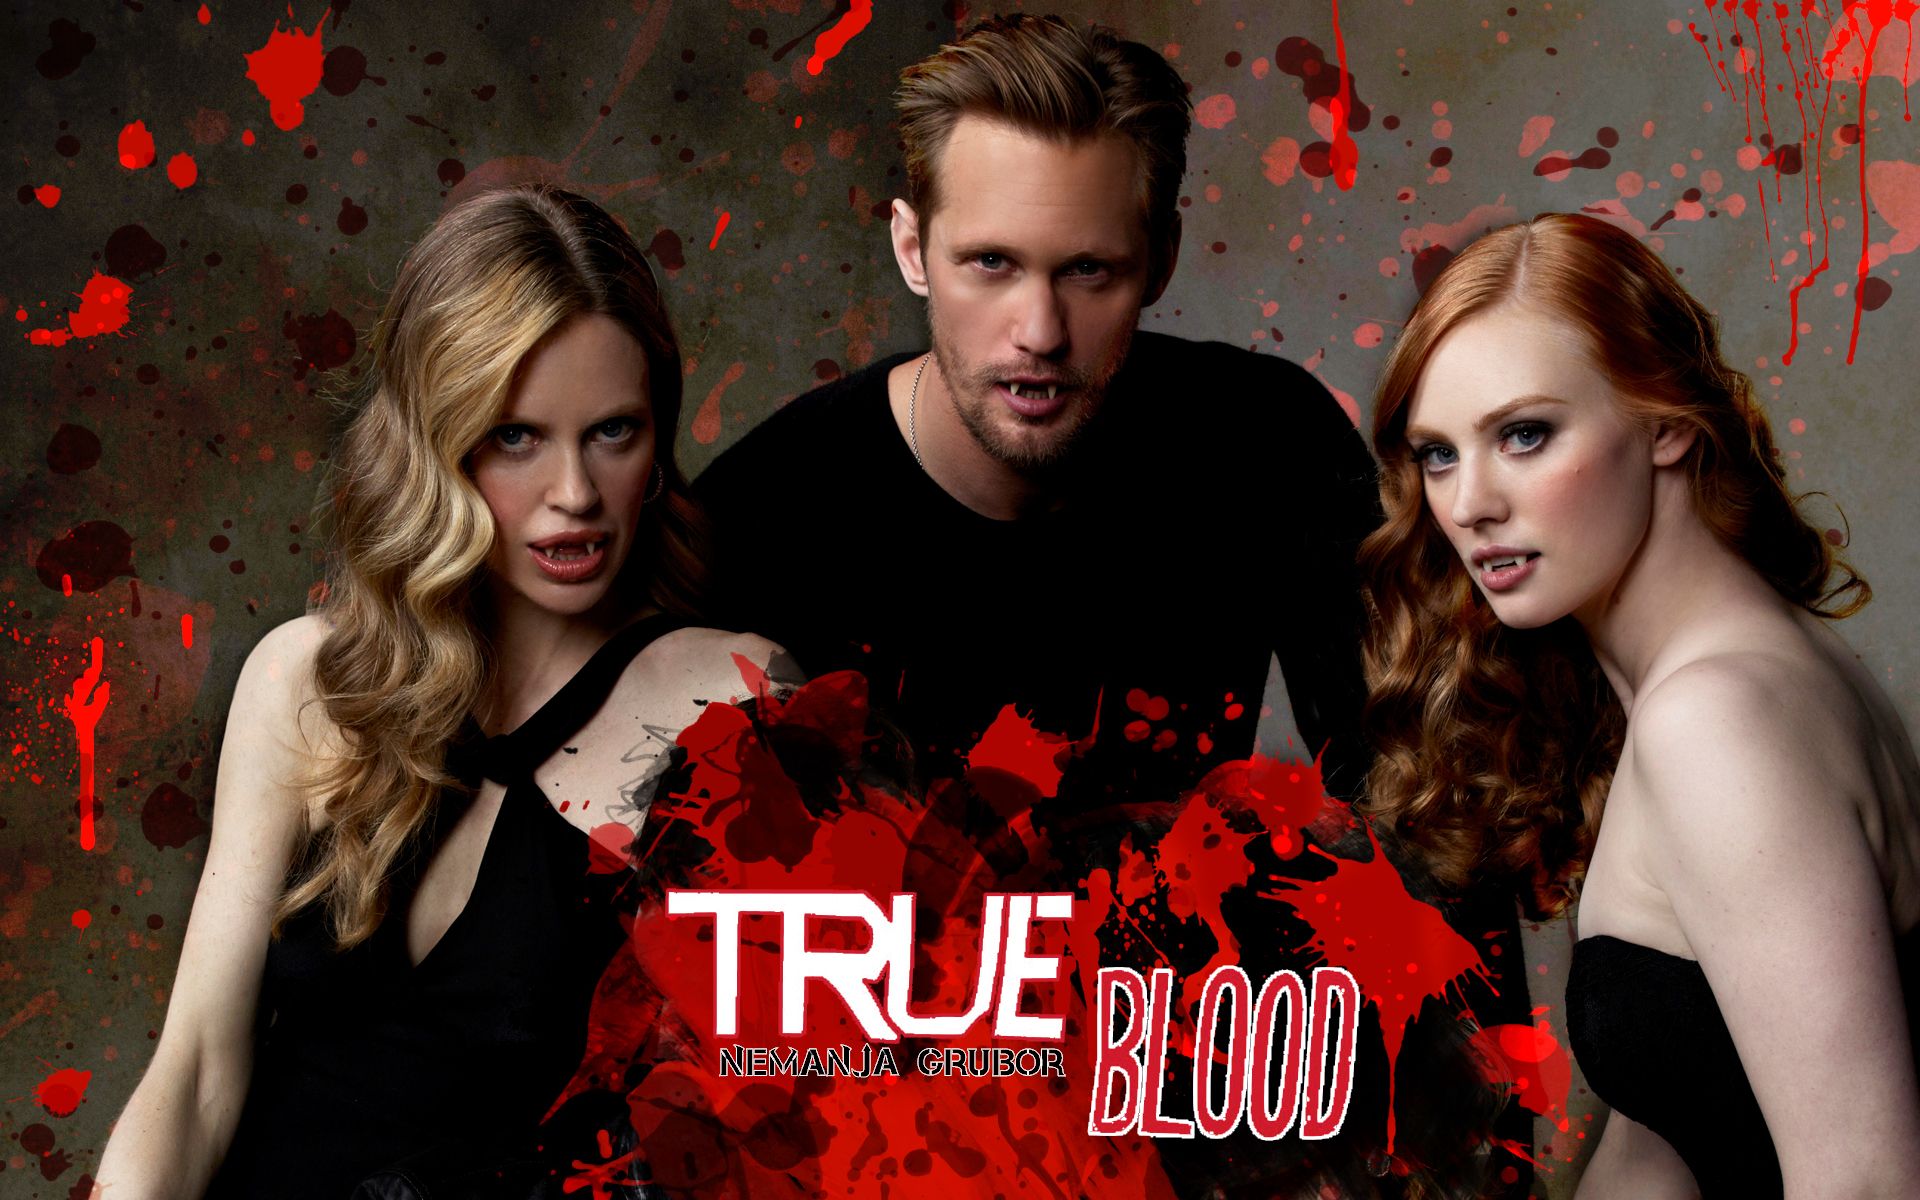 600x334px True Blood 99.46 KB #353001